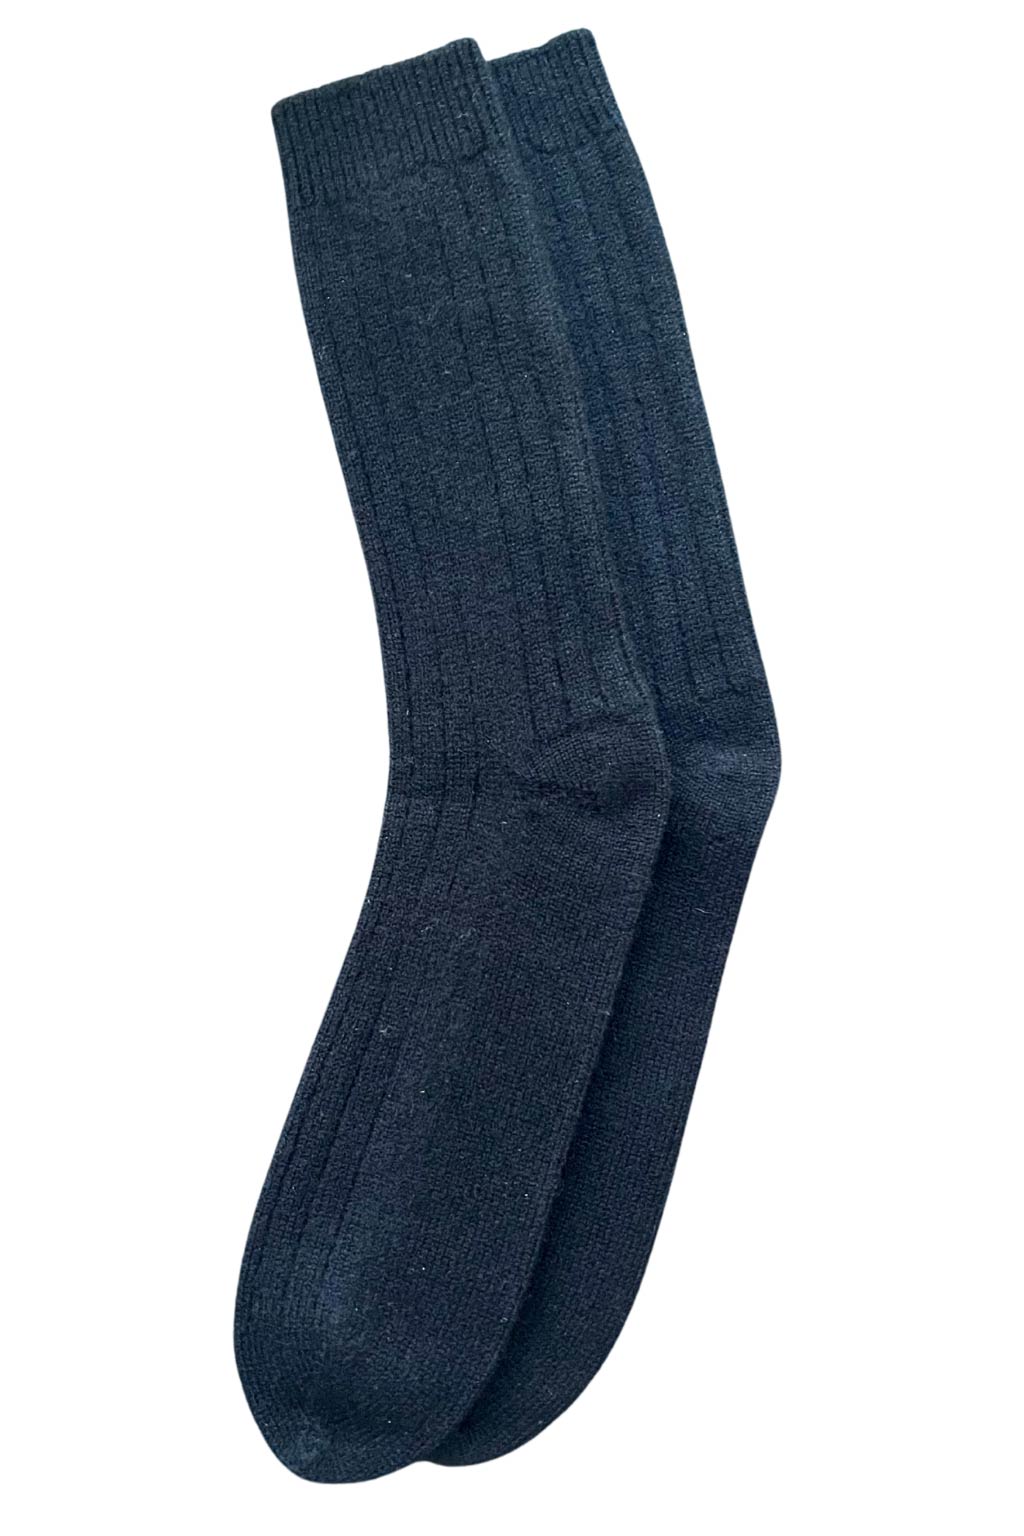 Men's Bed Socks Cashmere